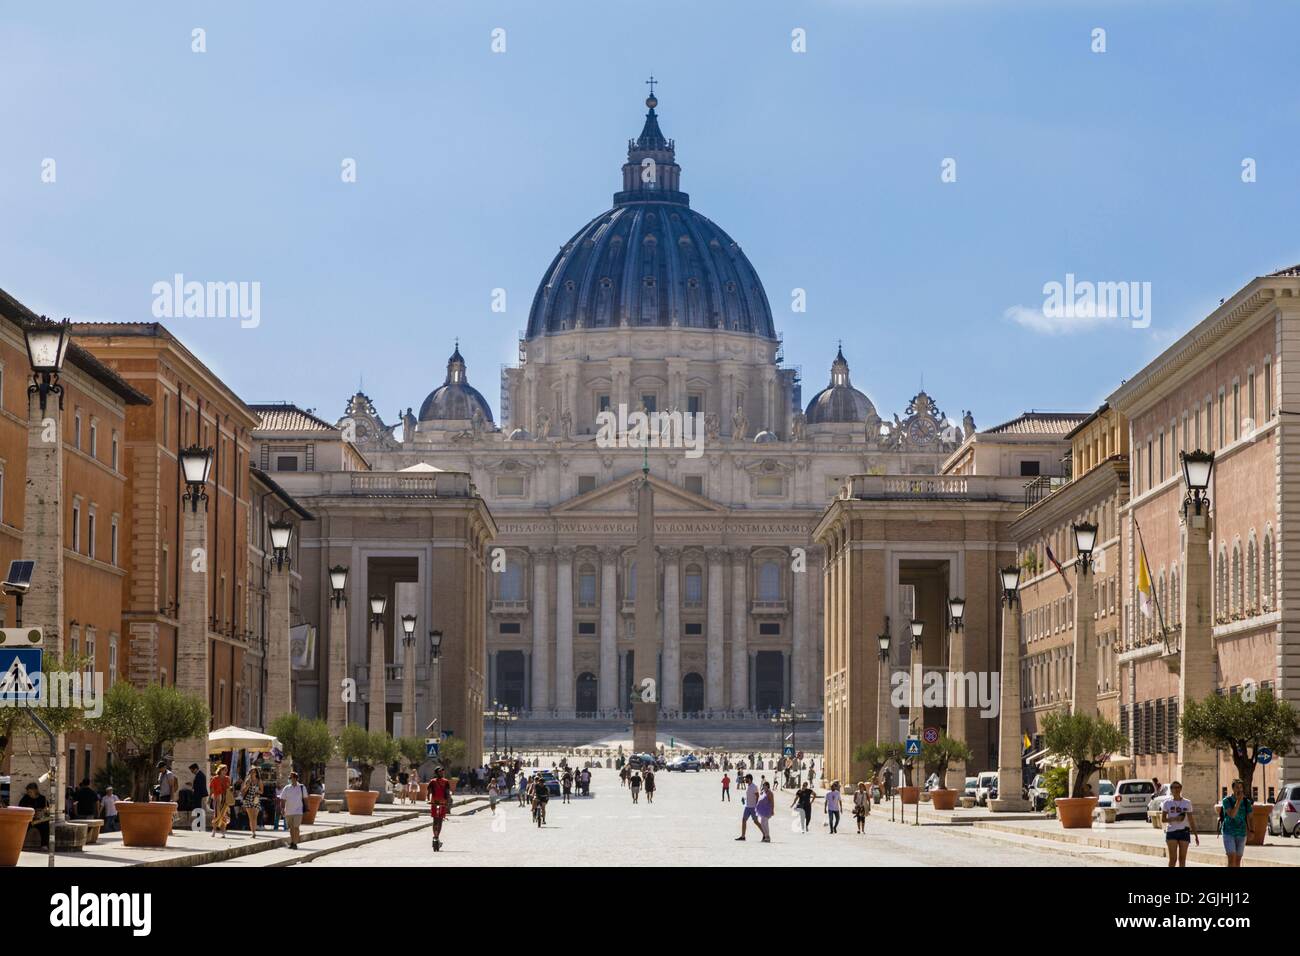 View of St Peters Basilica from via della Conciliazione, Rome, Italy Stock Photo